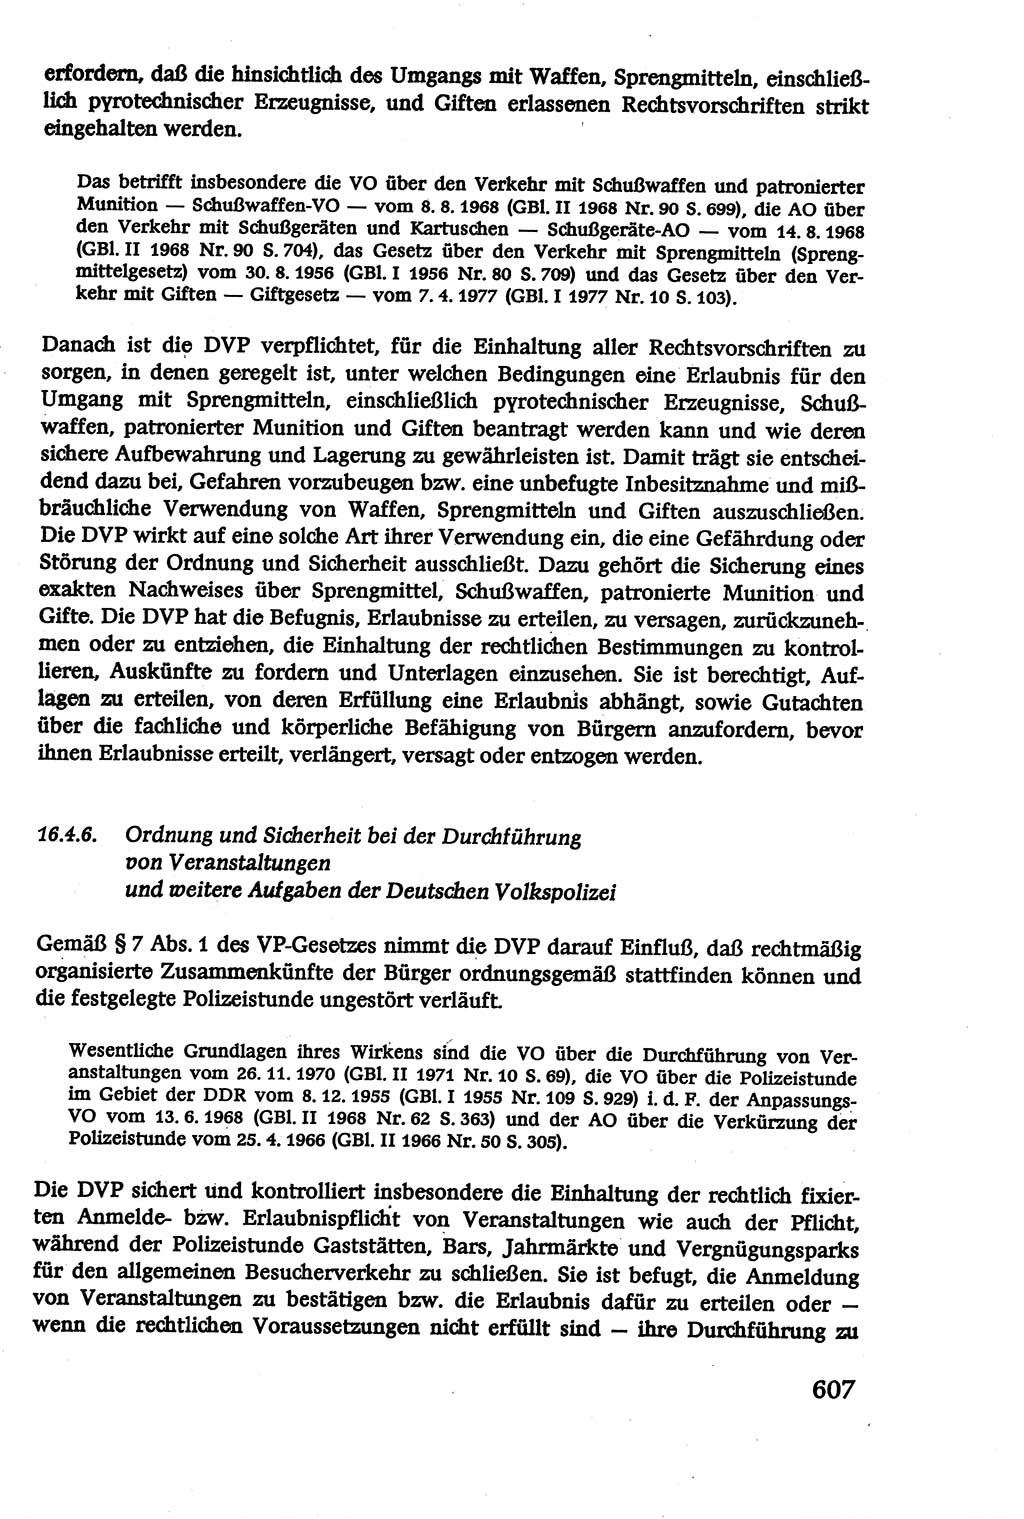 Verwaltungsrecht [Deutsche Demokratische Republik (DDR)], Lehrbuch 1979, Seite 607 (Verw.-R. DDR Lb. 1979, S. 607)